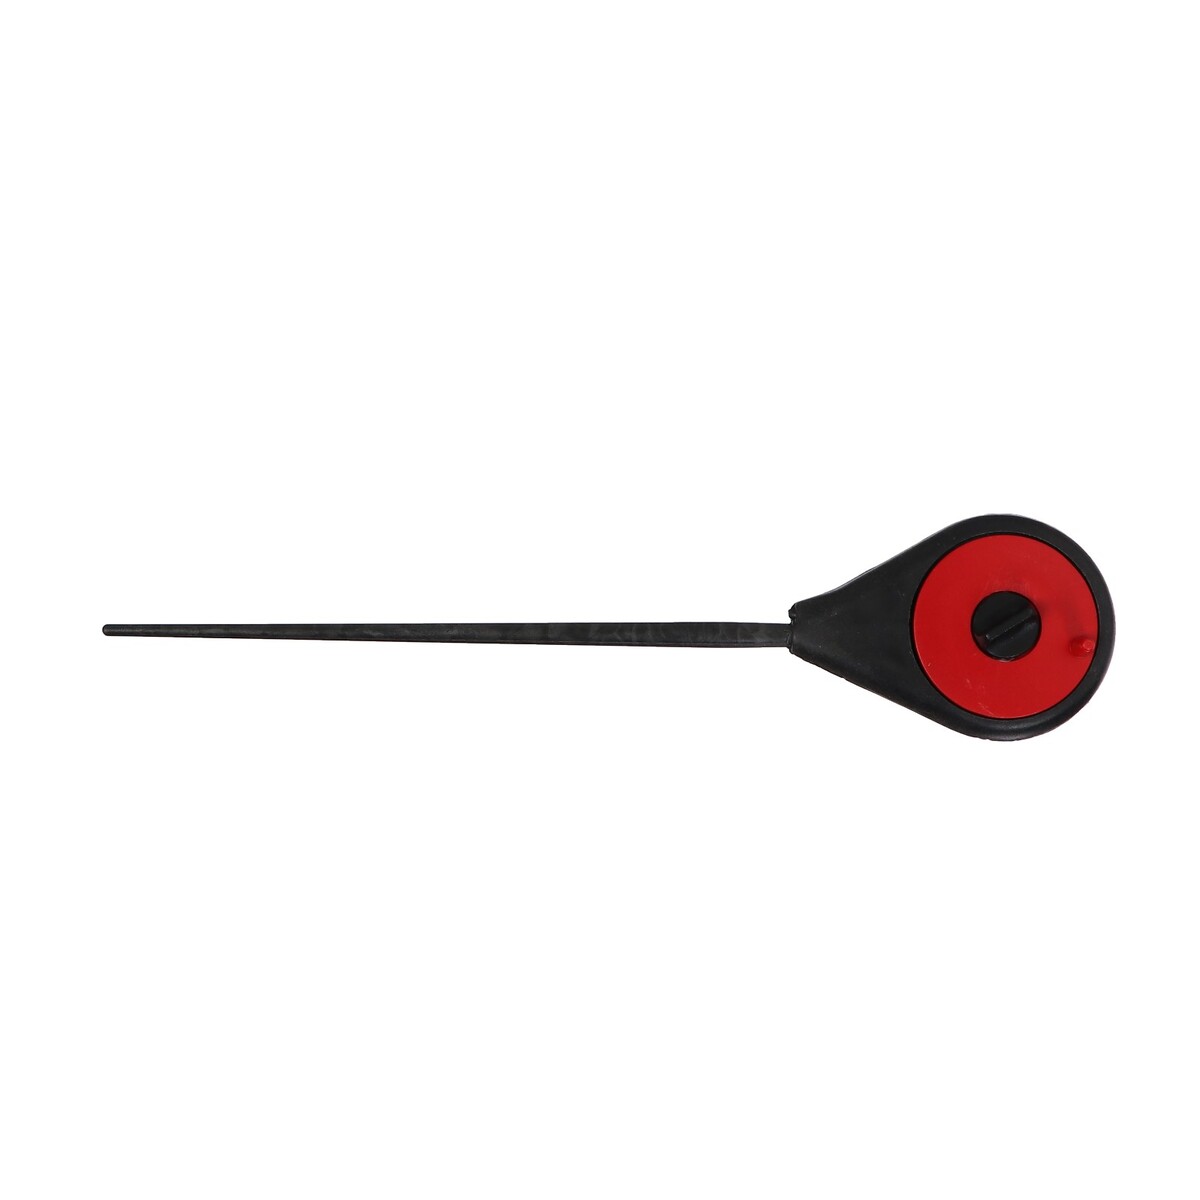 Удочка зимняя балалайка, цвет черный красный, hfb-18